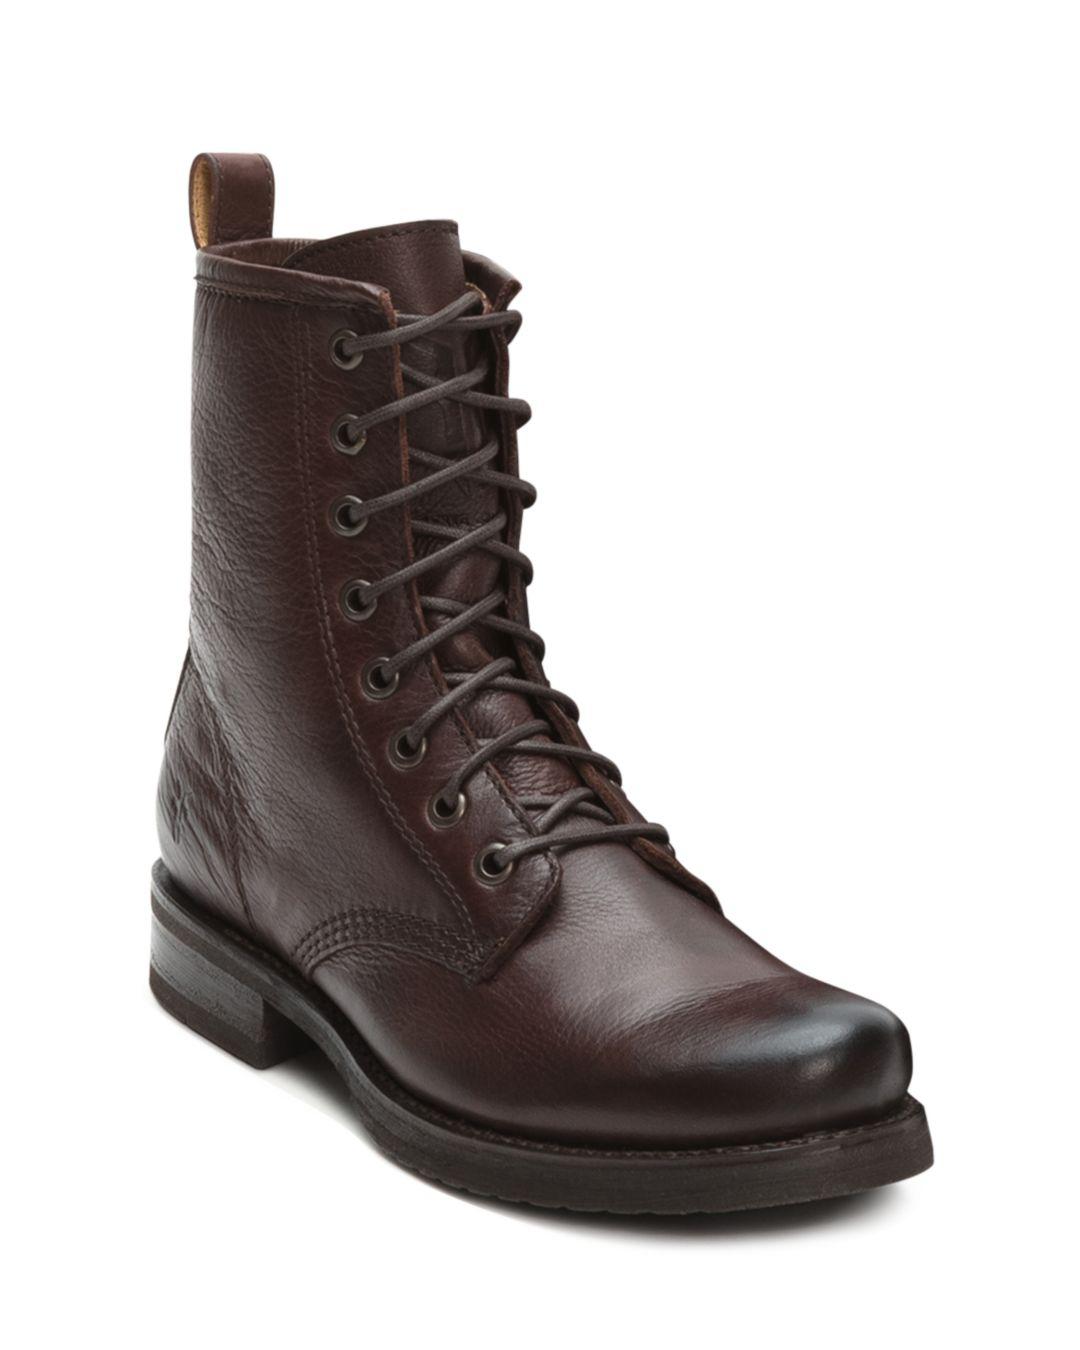 Frye Women's Veronica Metallic Leather Combat Boots in Brown - Lyst